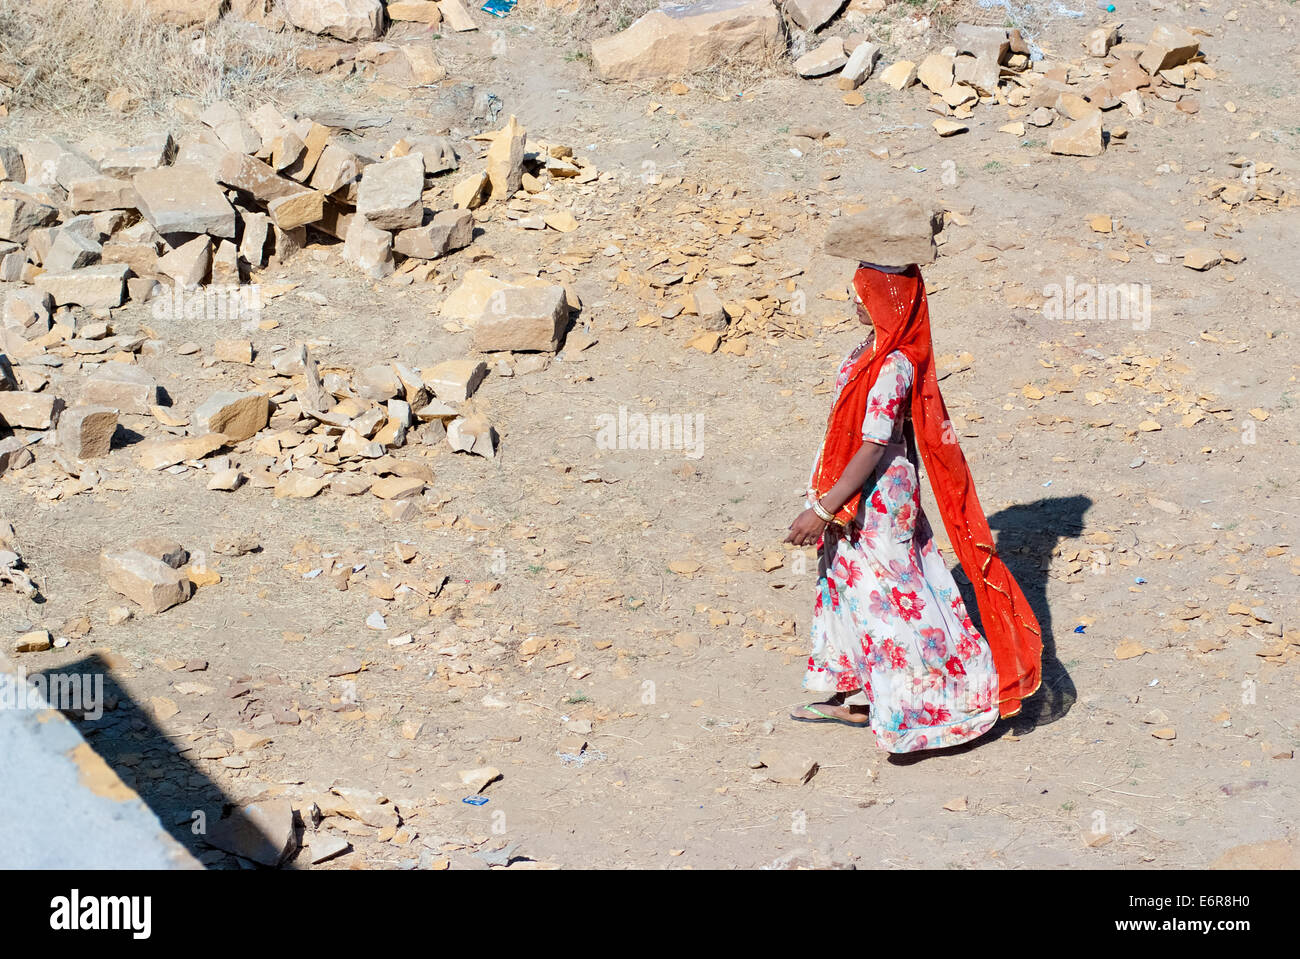 Une femme porte une brique sur la tête sur un chantier de construction le 25 février 2013 à Jaisalmer, Inde. Banque D'Images